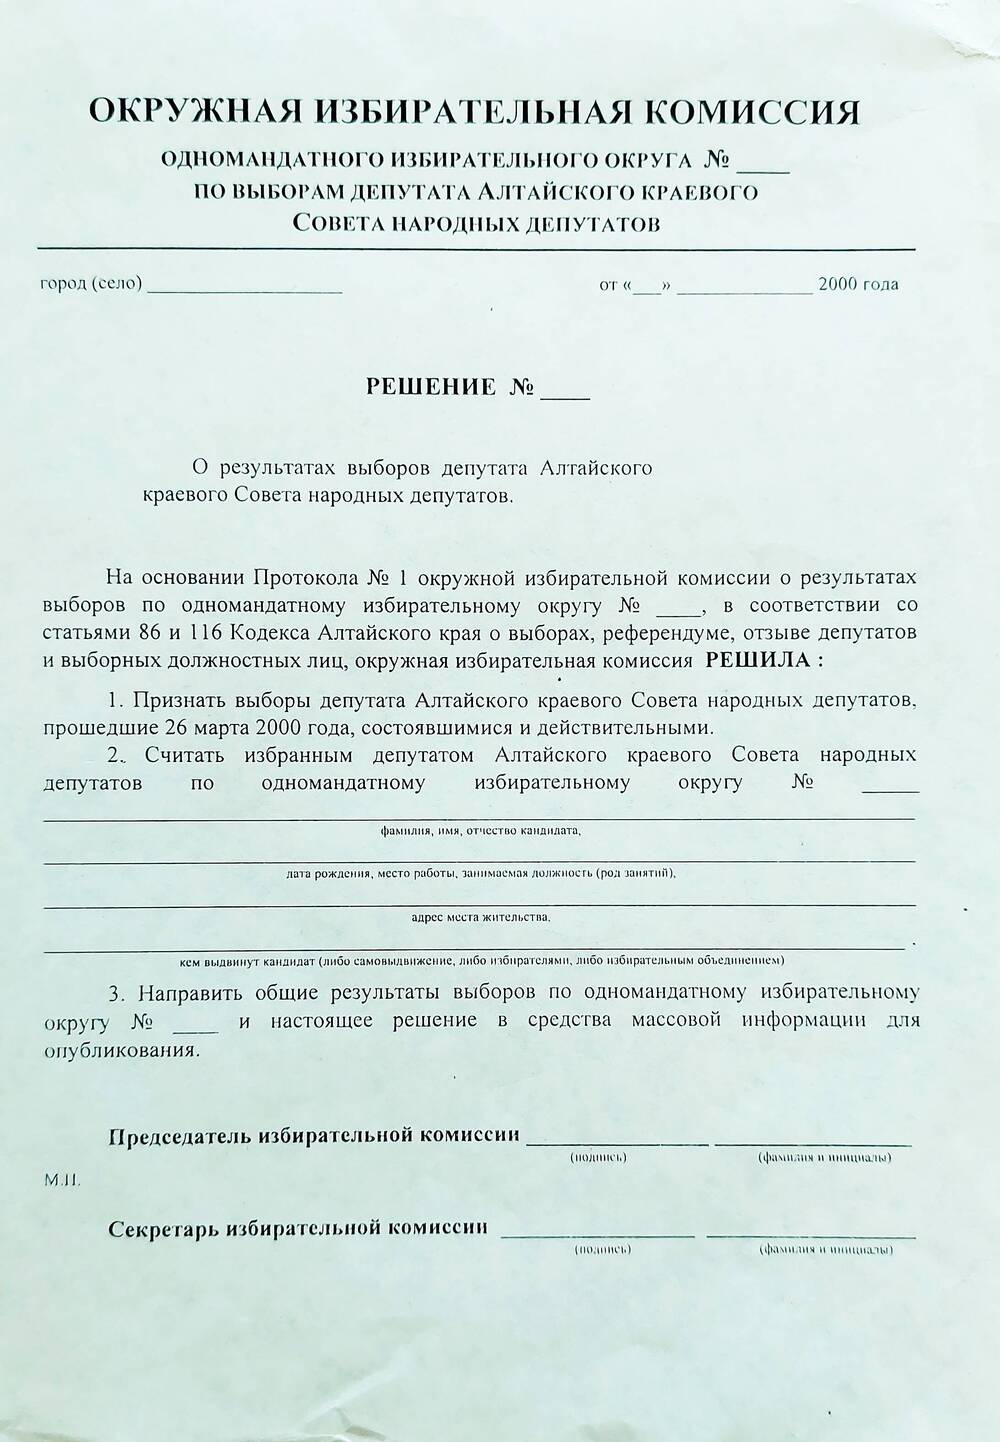 Бланк решения окружной избирательной комиссии о результатах выборов депутата Алтайского краевого Совета народных депутатов.